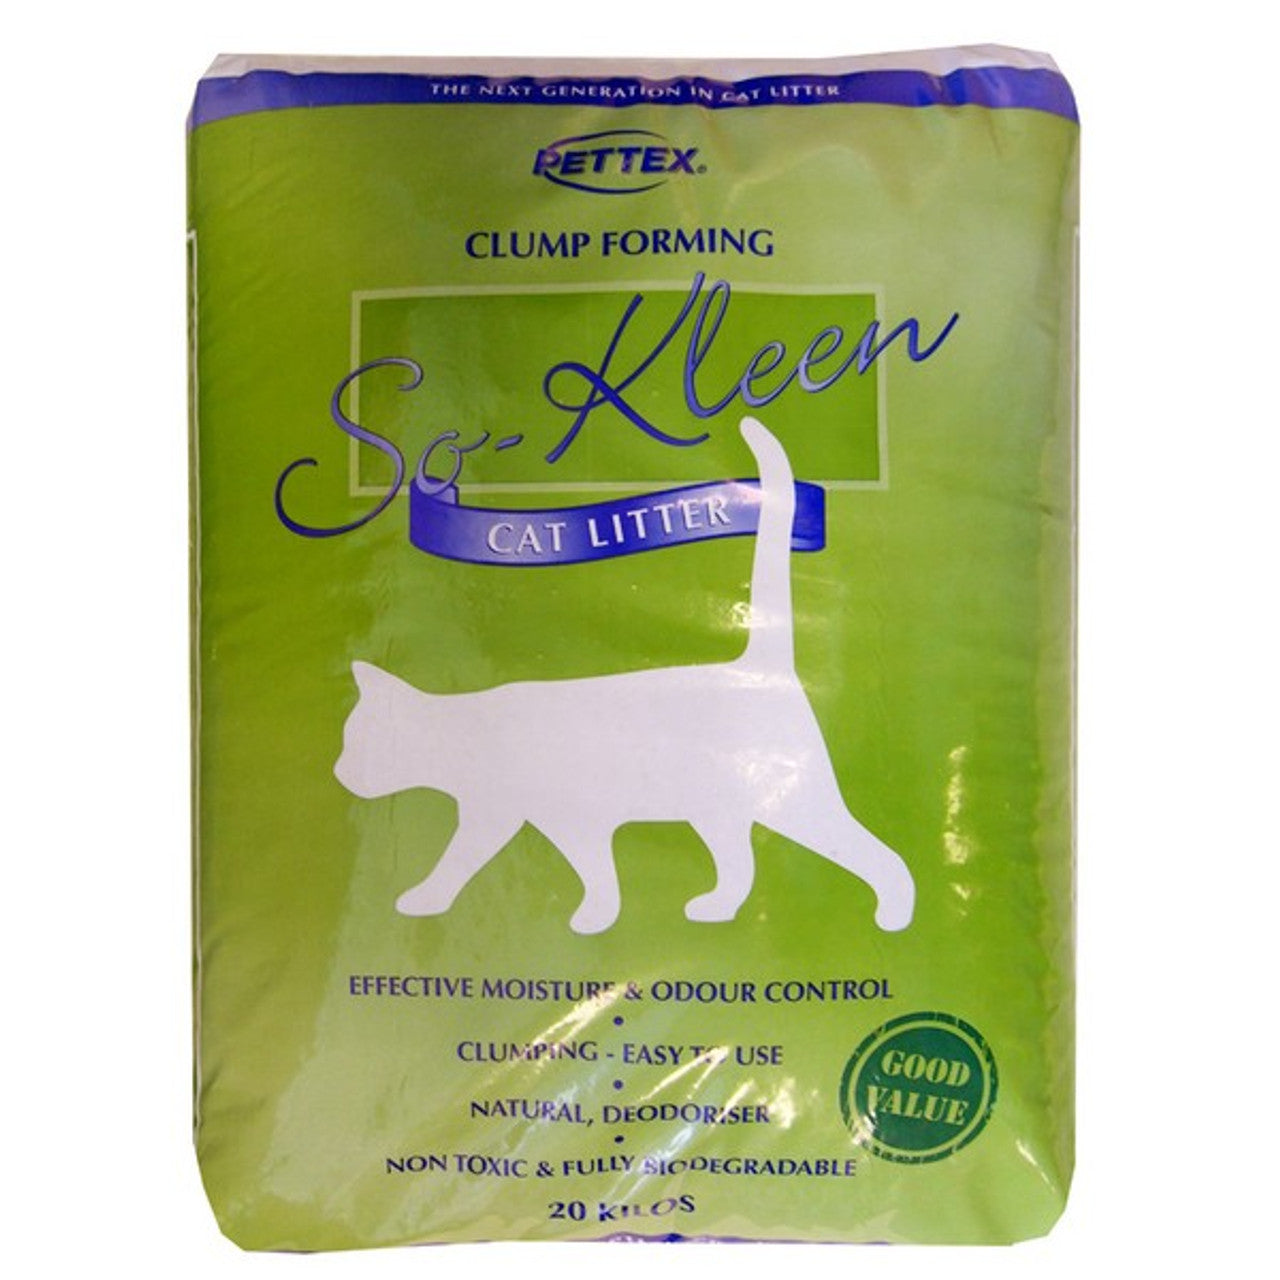 Pettex So-Kleen Grey Clumping Cat Litter 20kg